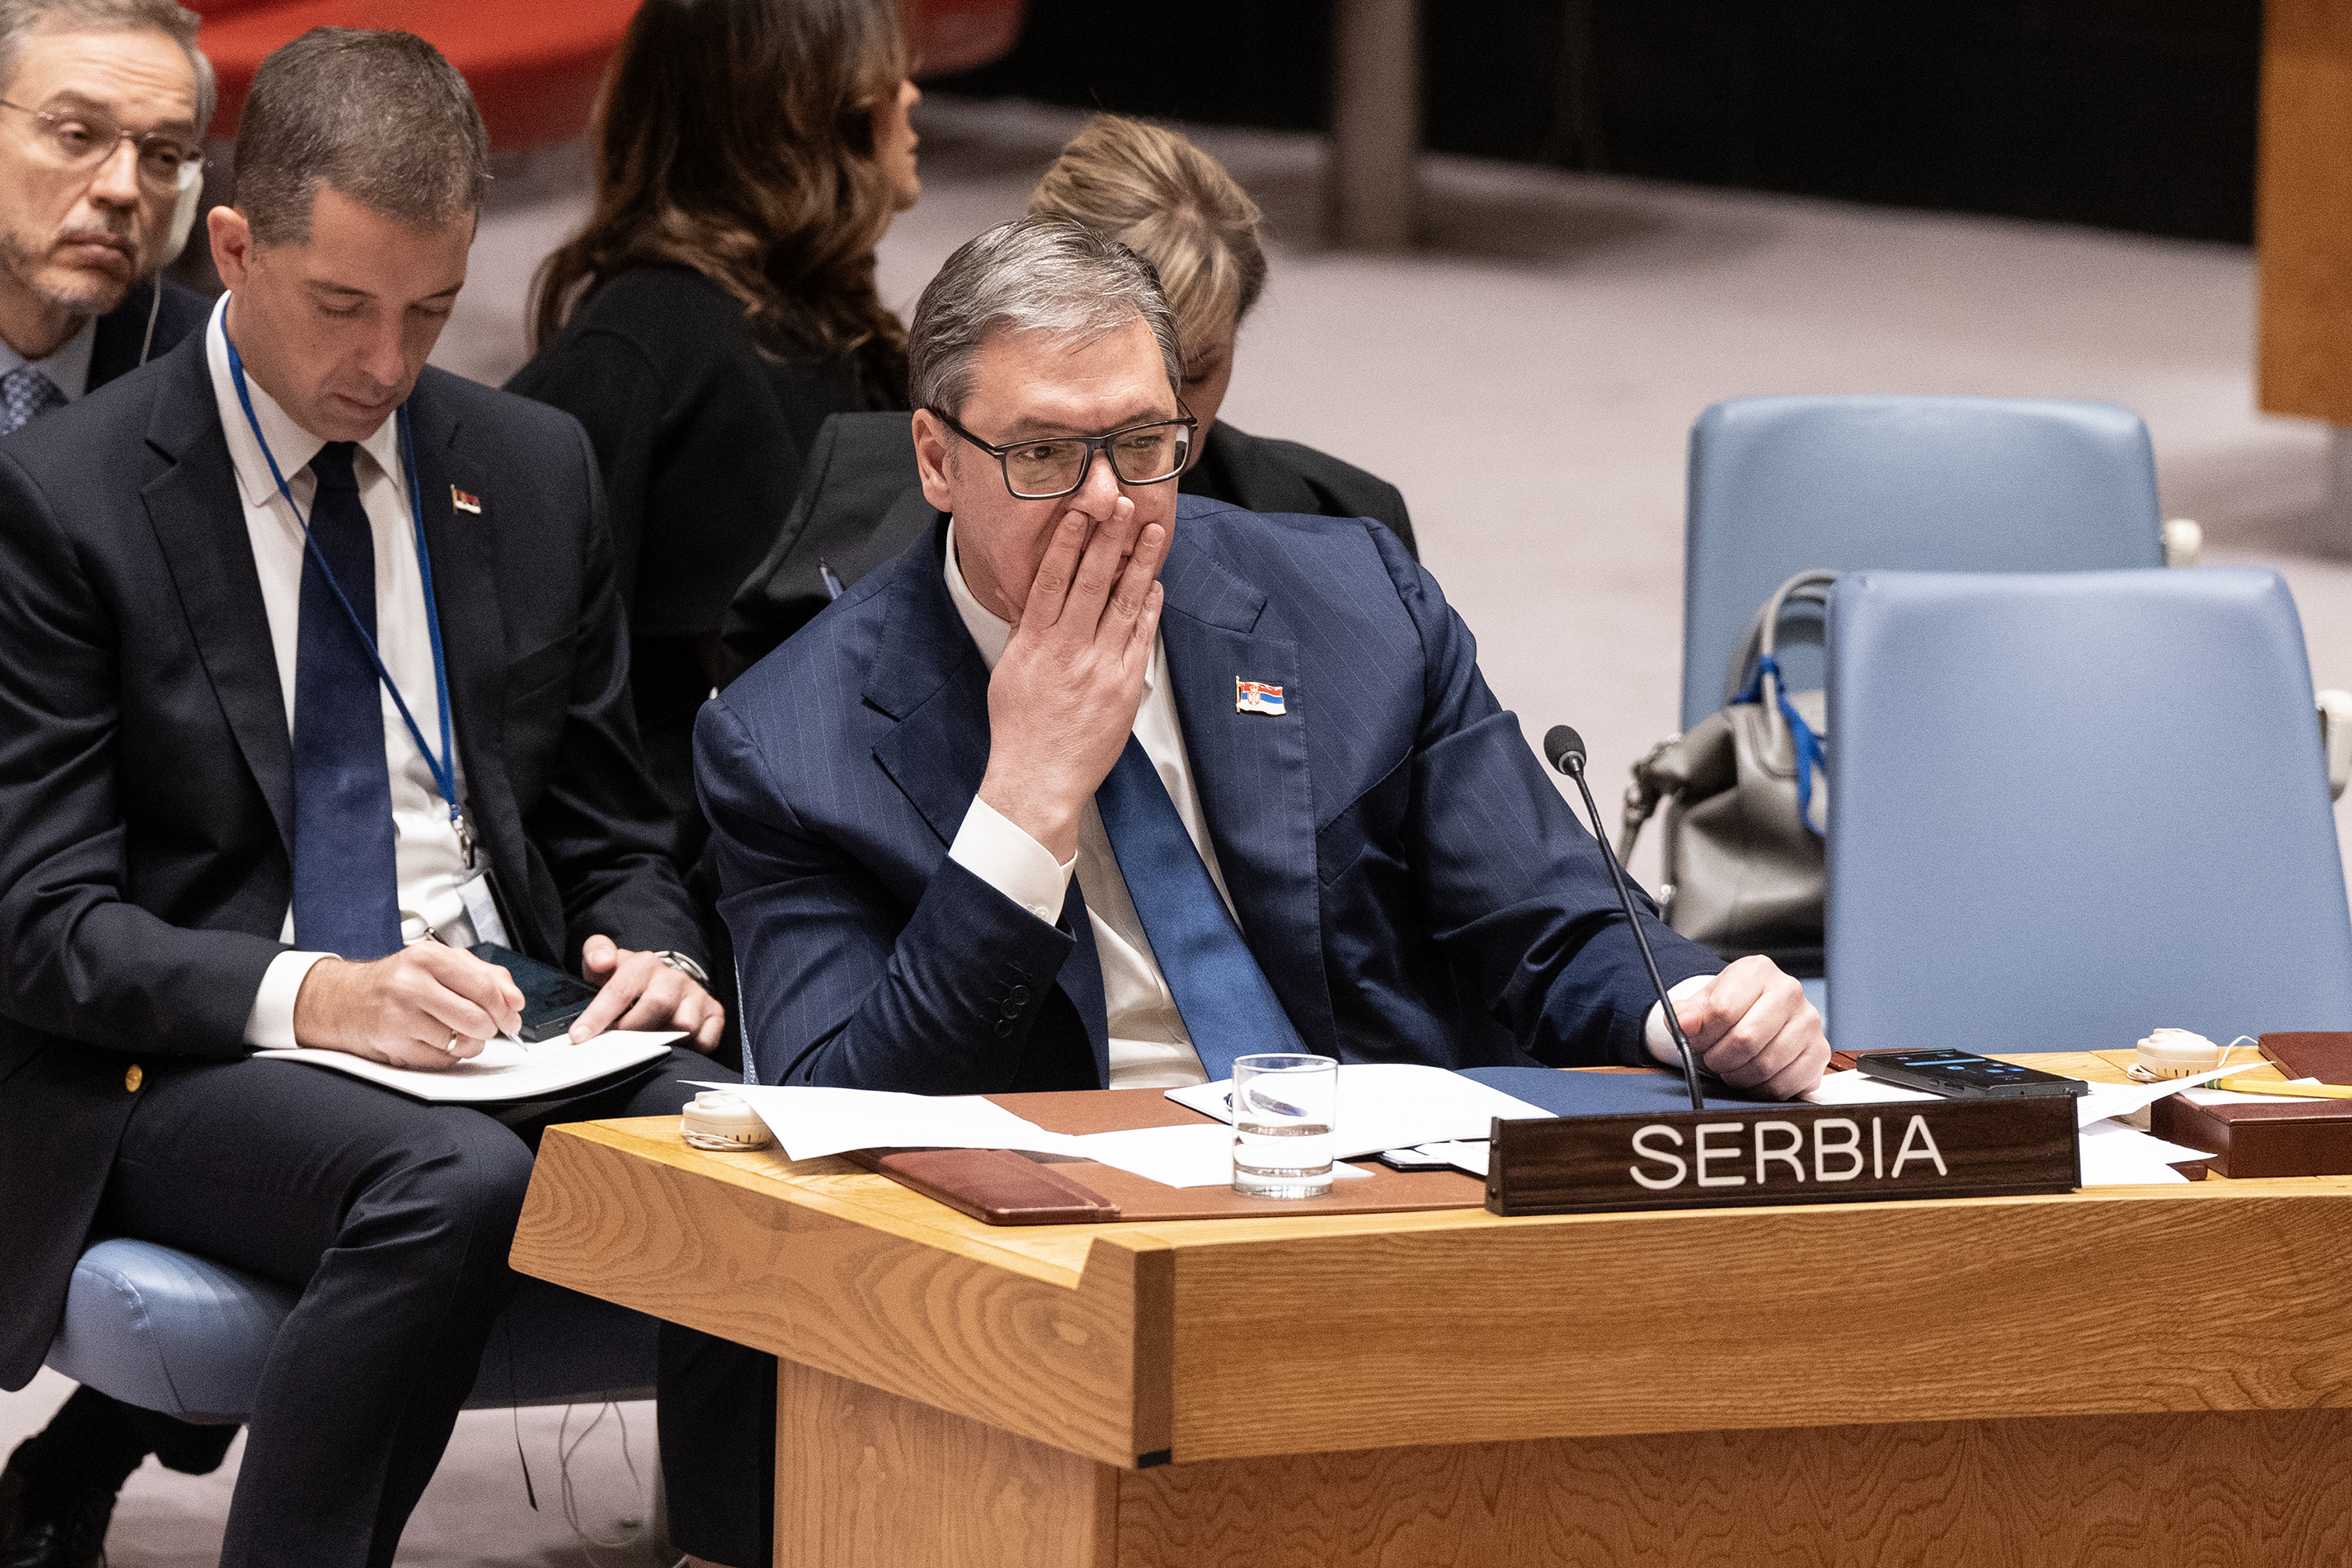 Вучич поблагодарил Россию и Китай за голосование против резолюции по Сребреницы